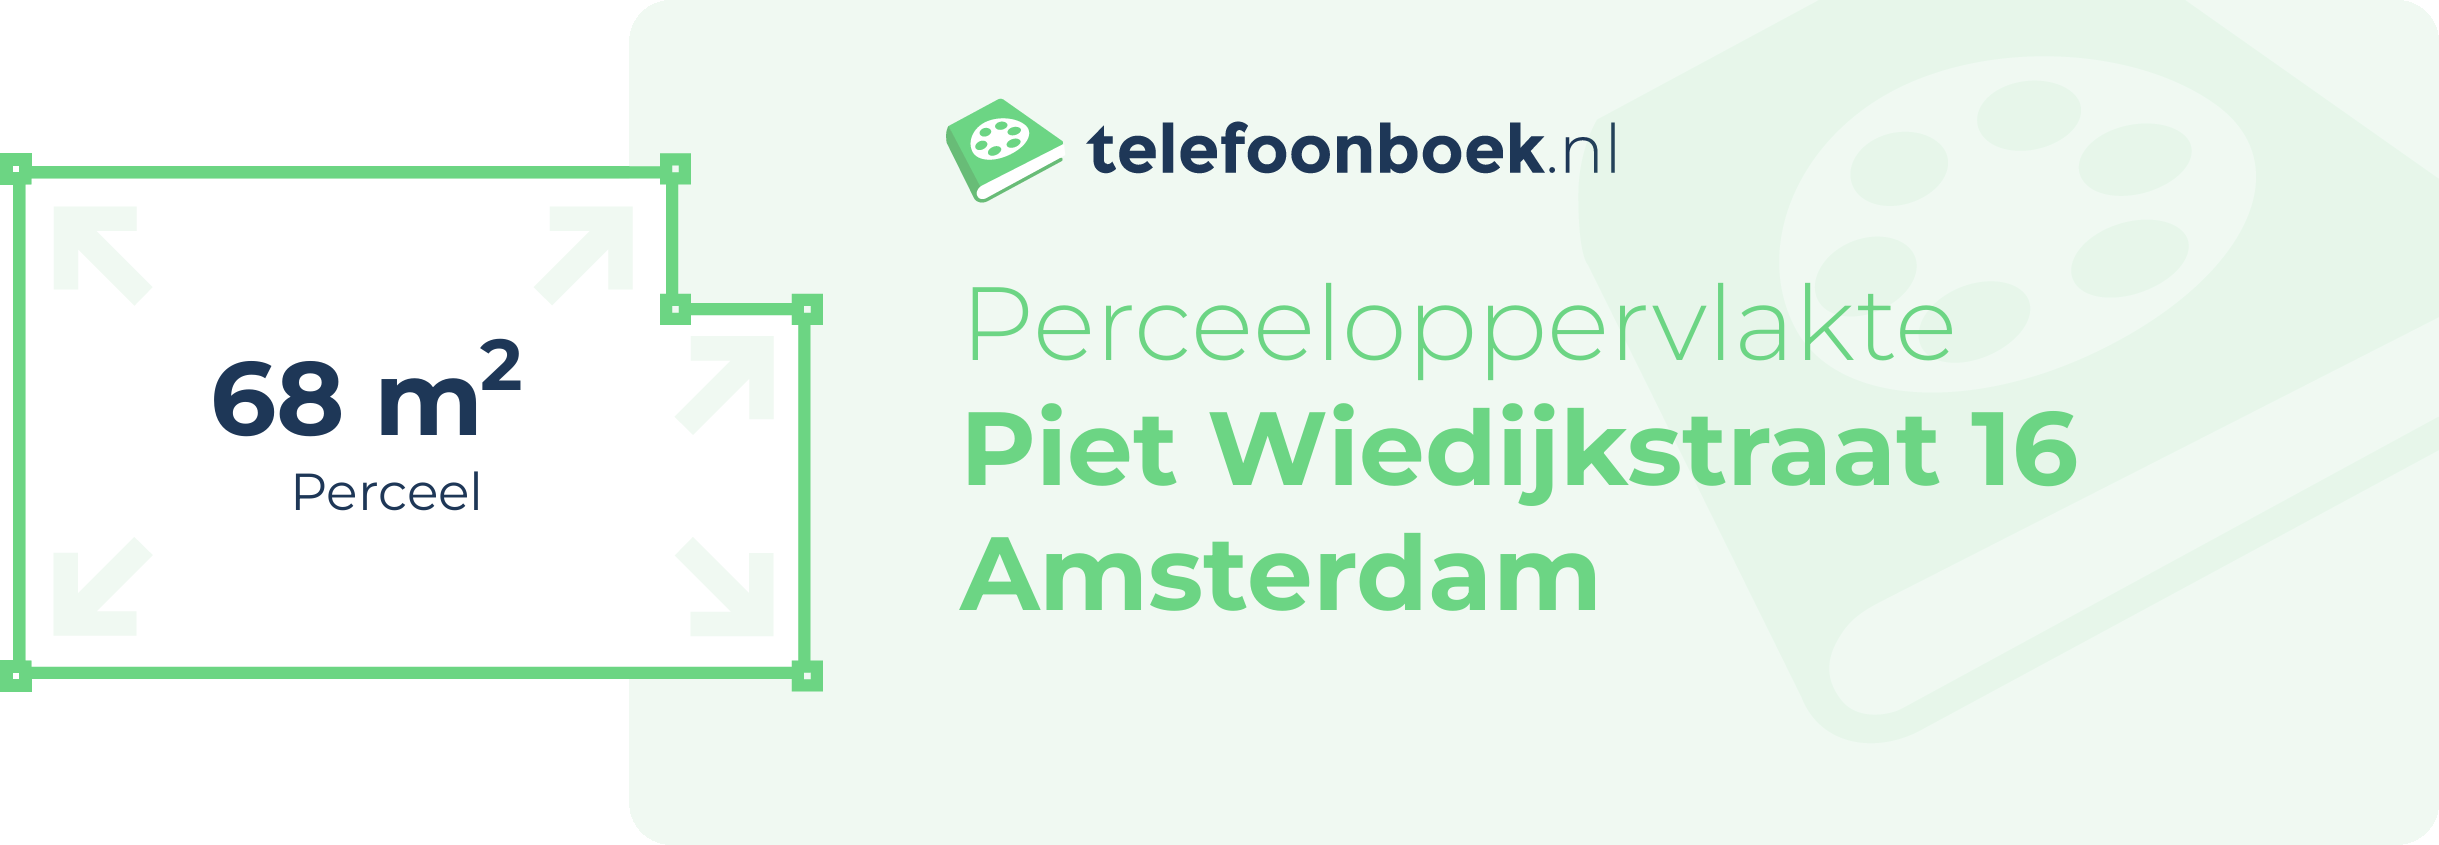 Perceeloppervlakte Piet Wiedijkstraat 16 Amsterdam